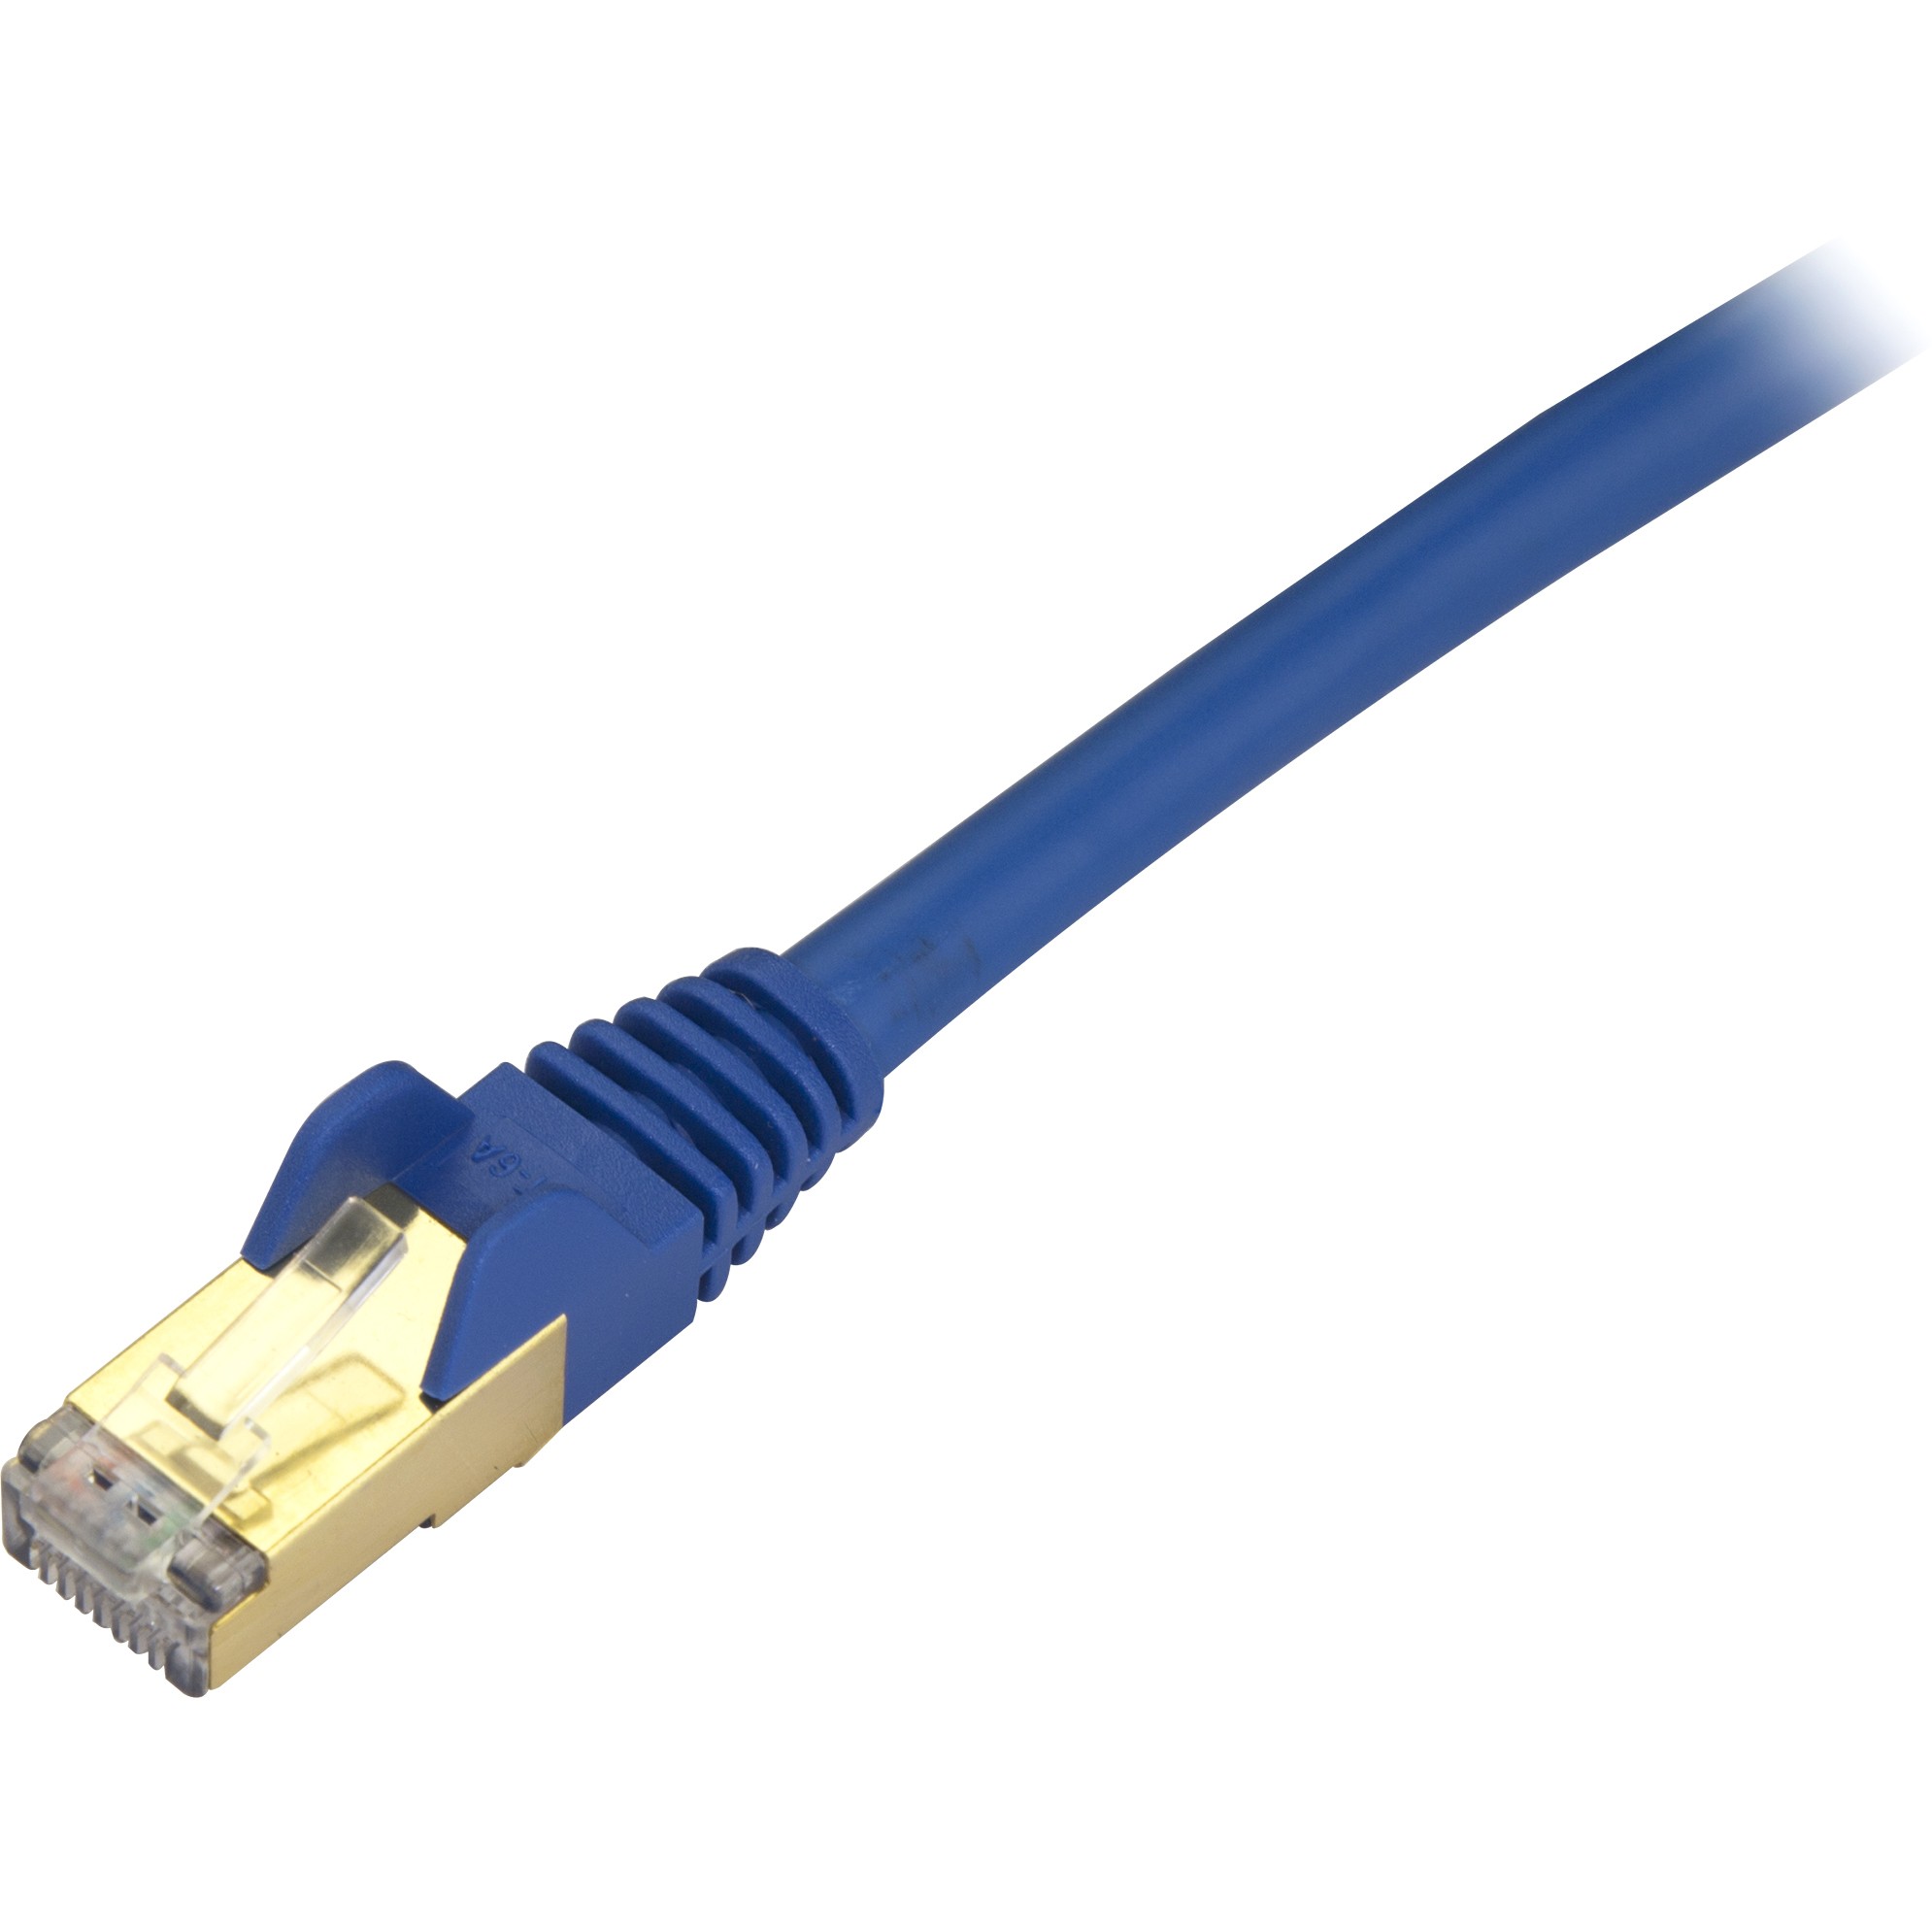 6ft Blue Cat6a STP Cable